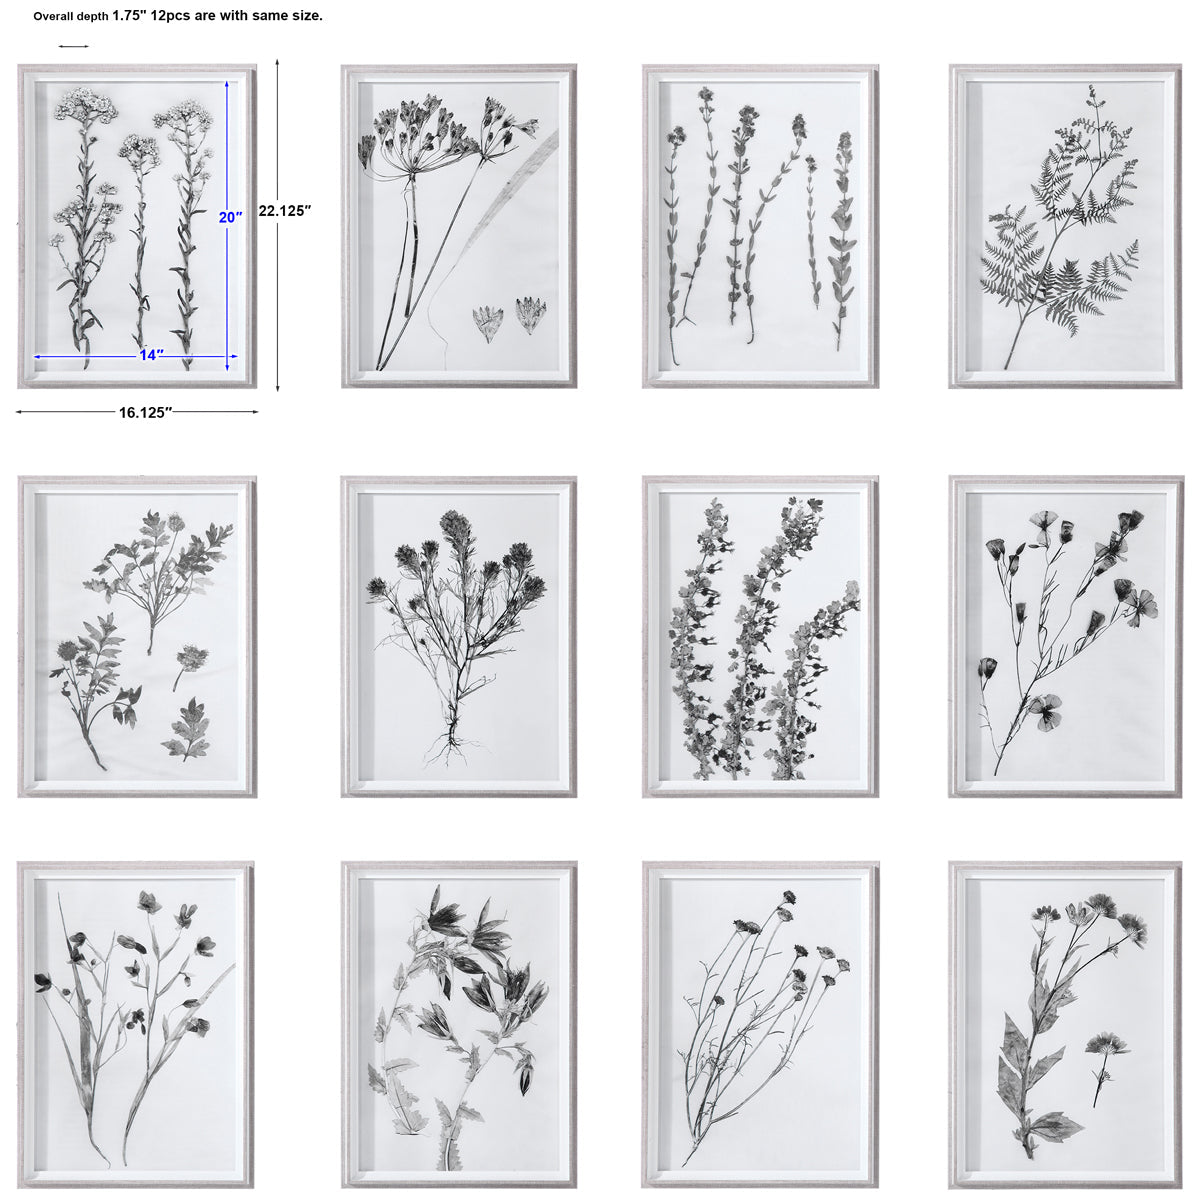 Uttermost Contemporary Botanicals Framed Prints, Set of 12